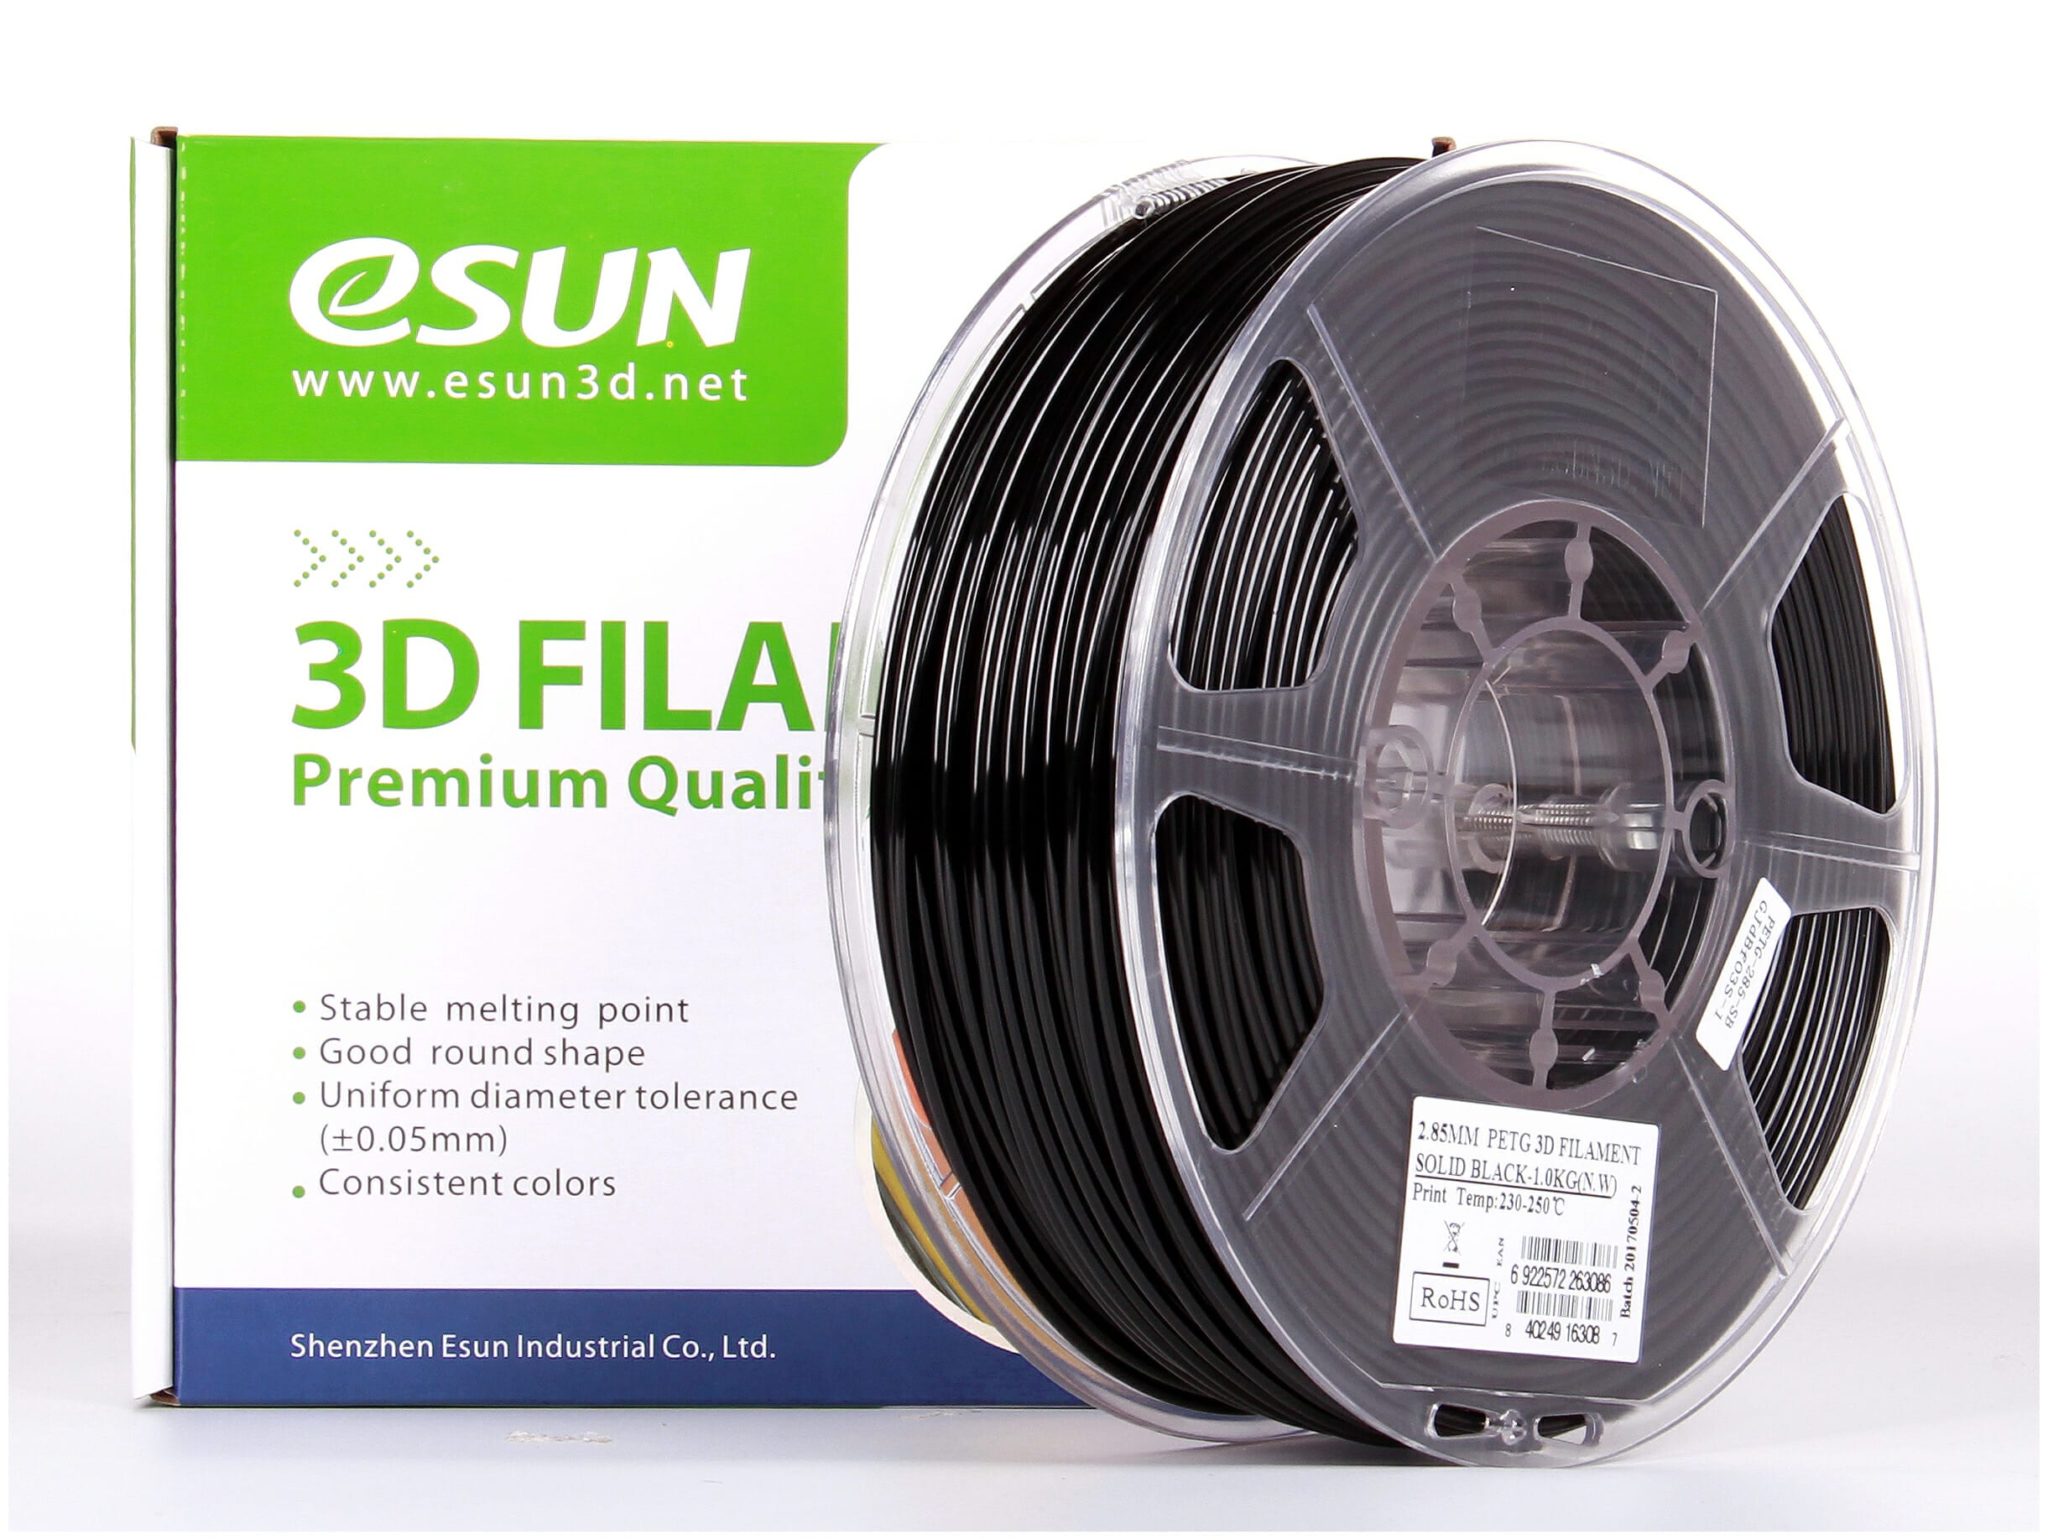 eSUN PETG 3D Filament 1.75mm